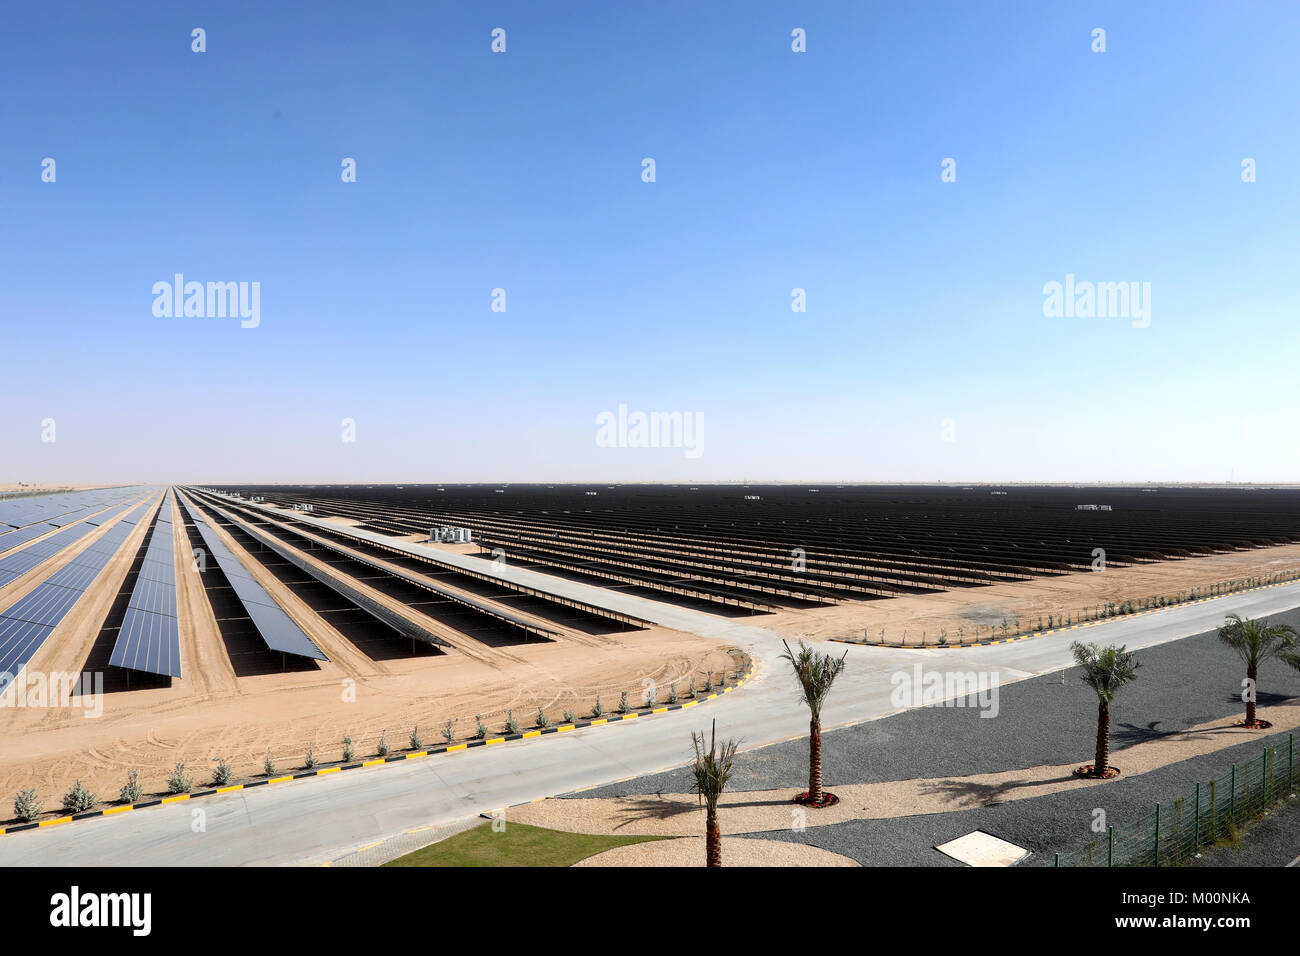 Dubaï, Émirats arabes unis, le 17 janvier 2018. Un champ de panneaux solaires photovoltaïques qui font partie de la Fondation Mohammed bin Rashid parc solaire à Dubaï, Émirats arabes unis, le 17 janvier 2018. Credit : Dominic Dudley/Alamy Live News Banque D'Images